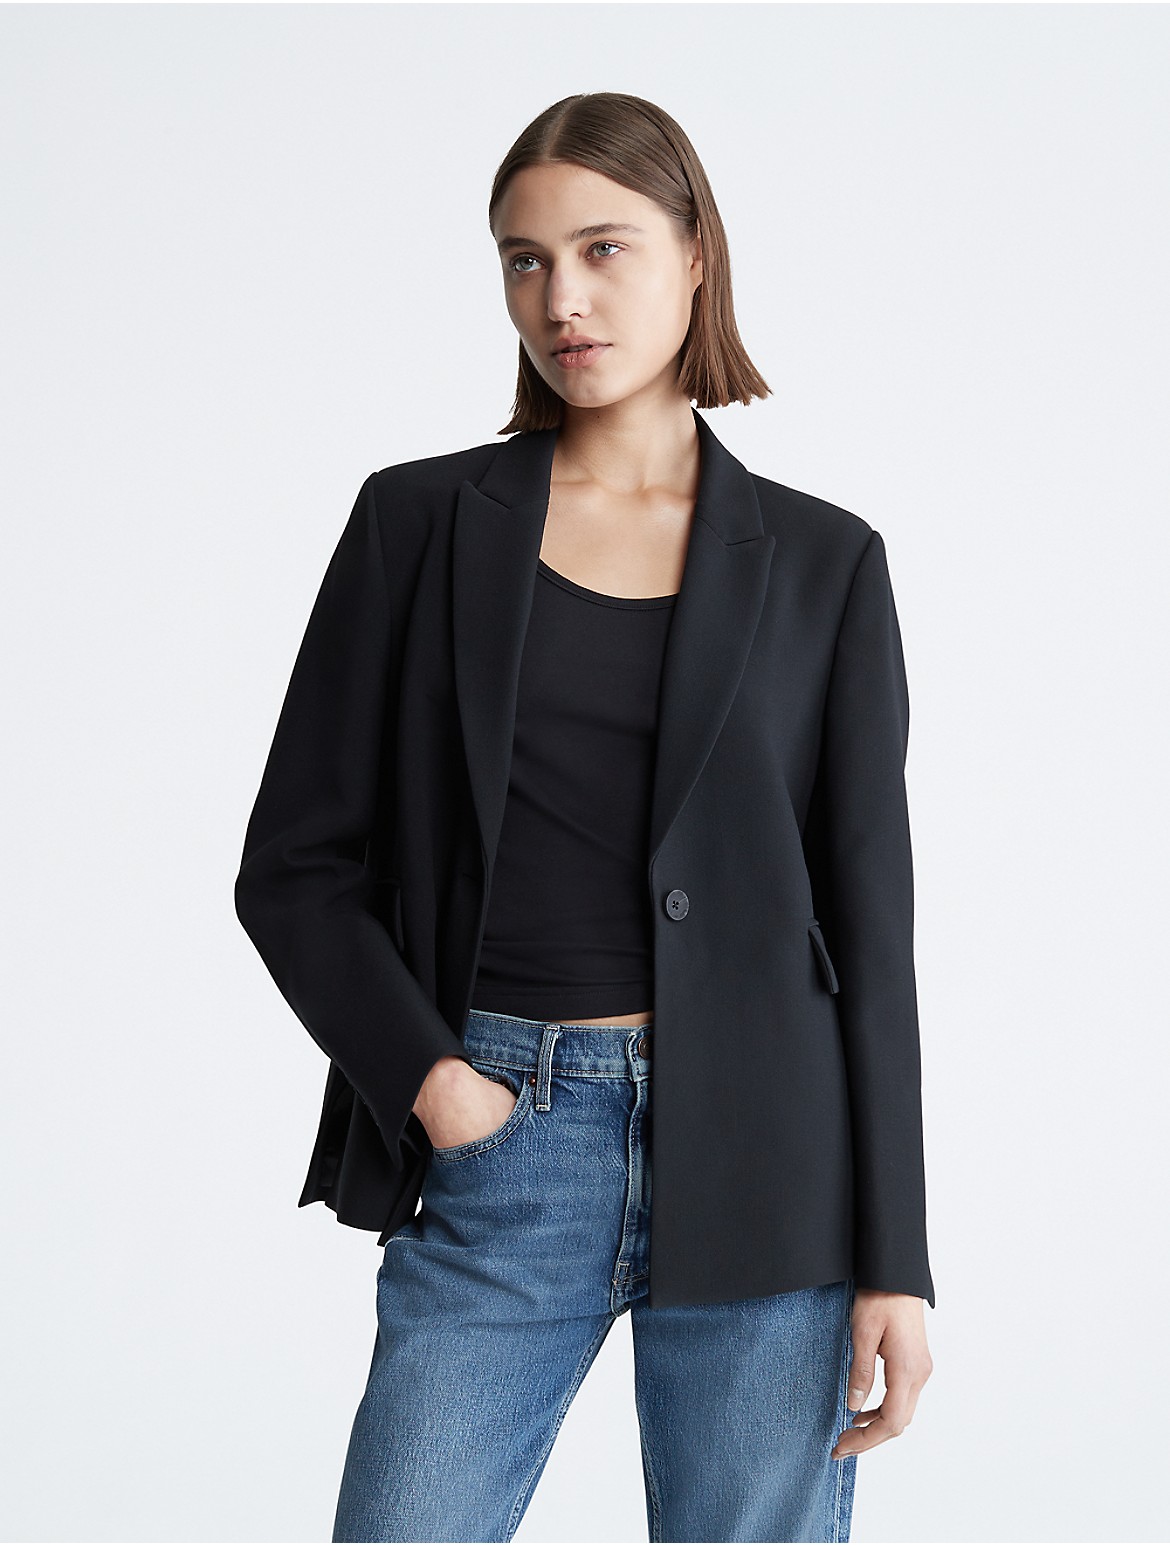 Calvin Klein Women's Boxy Fit Single Button Blazer - Black - XL